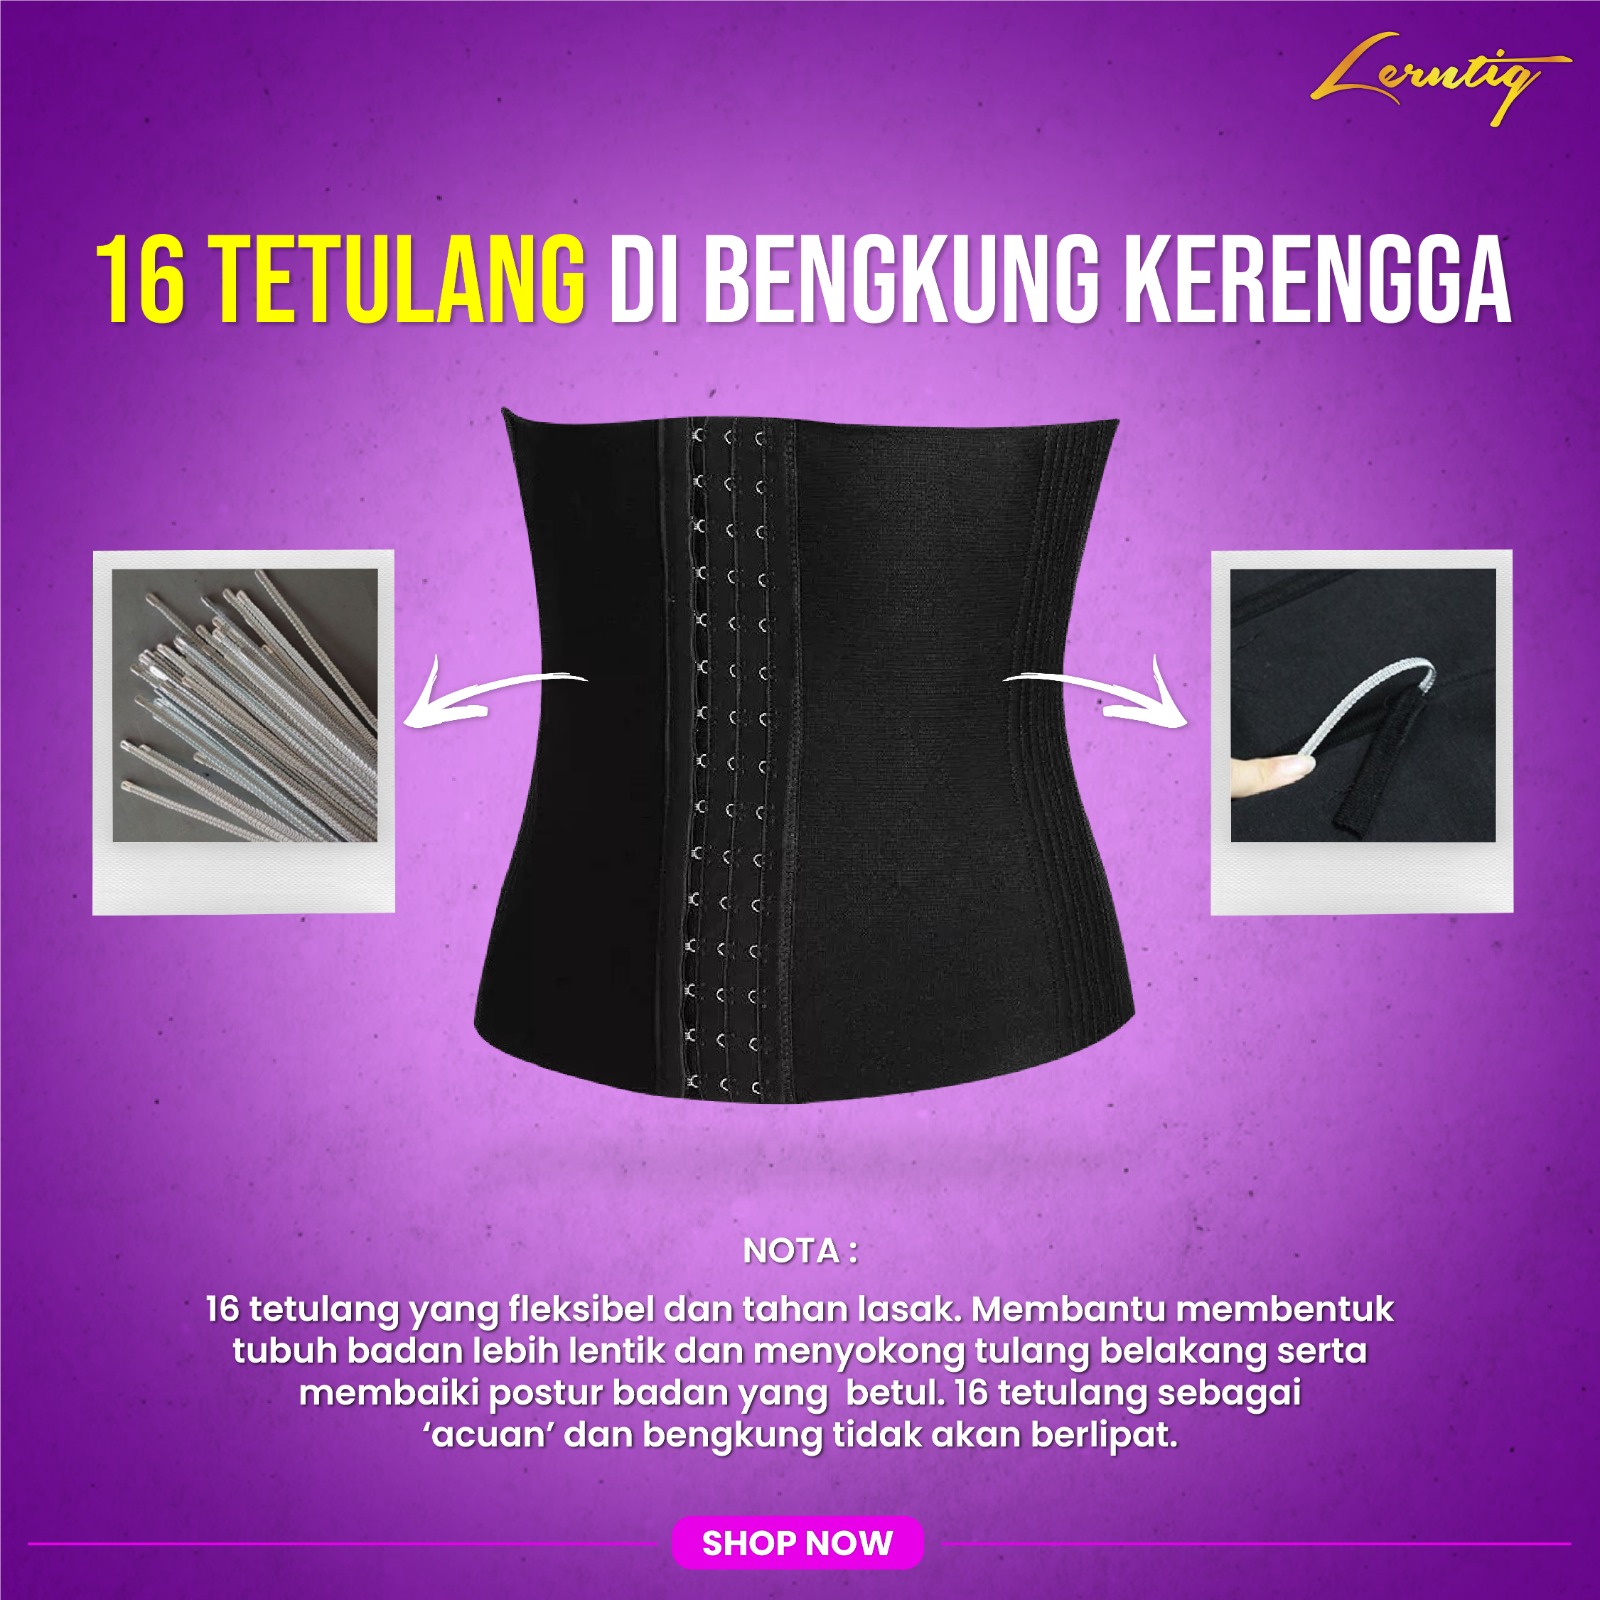 Bengkung Kerengga Legend 16Tetulang – Lerntiq